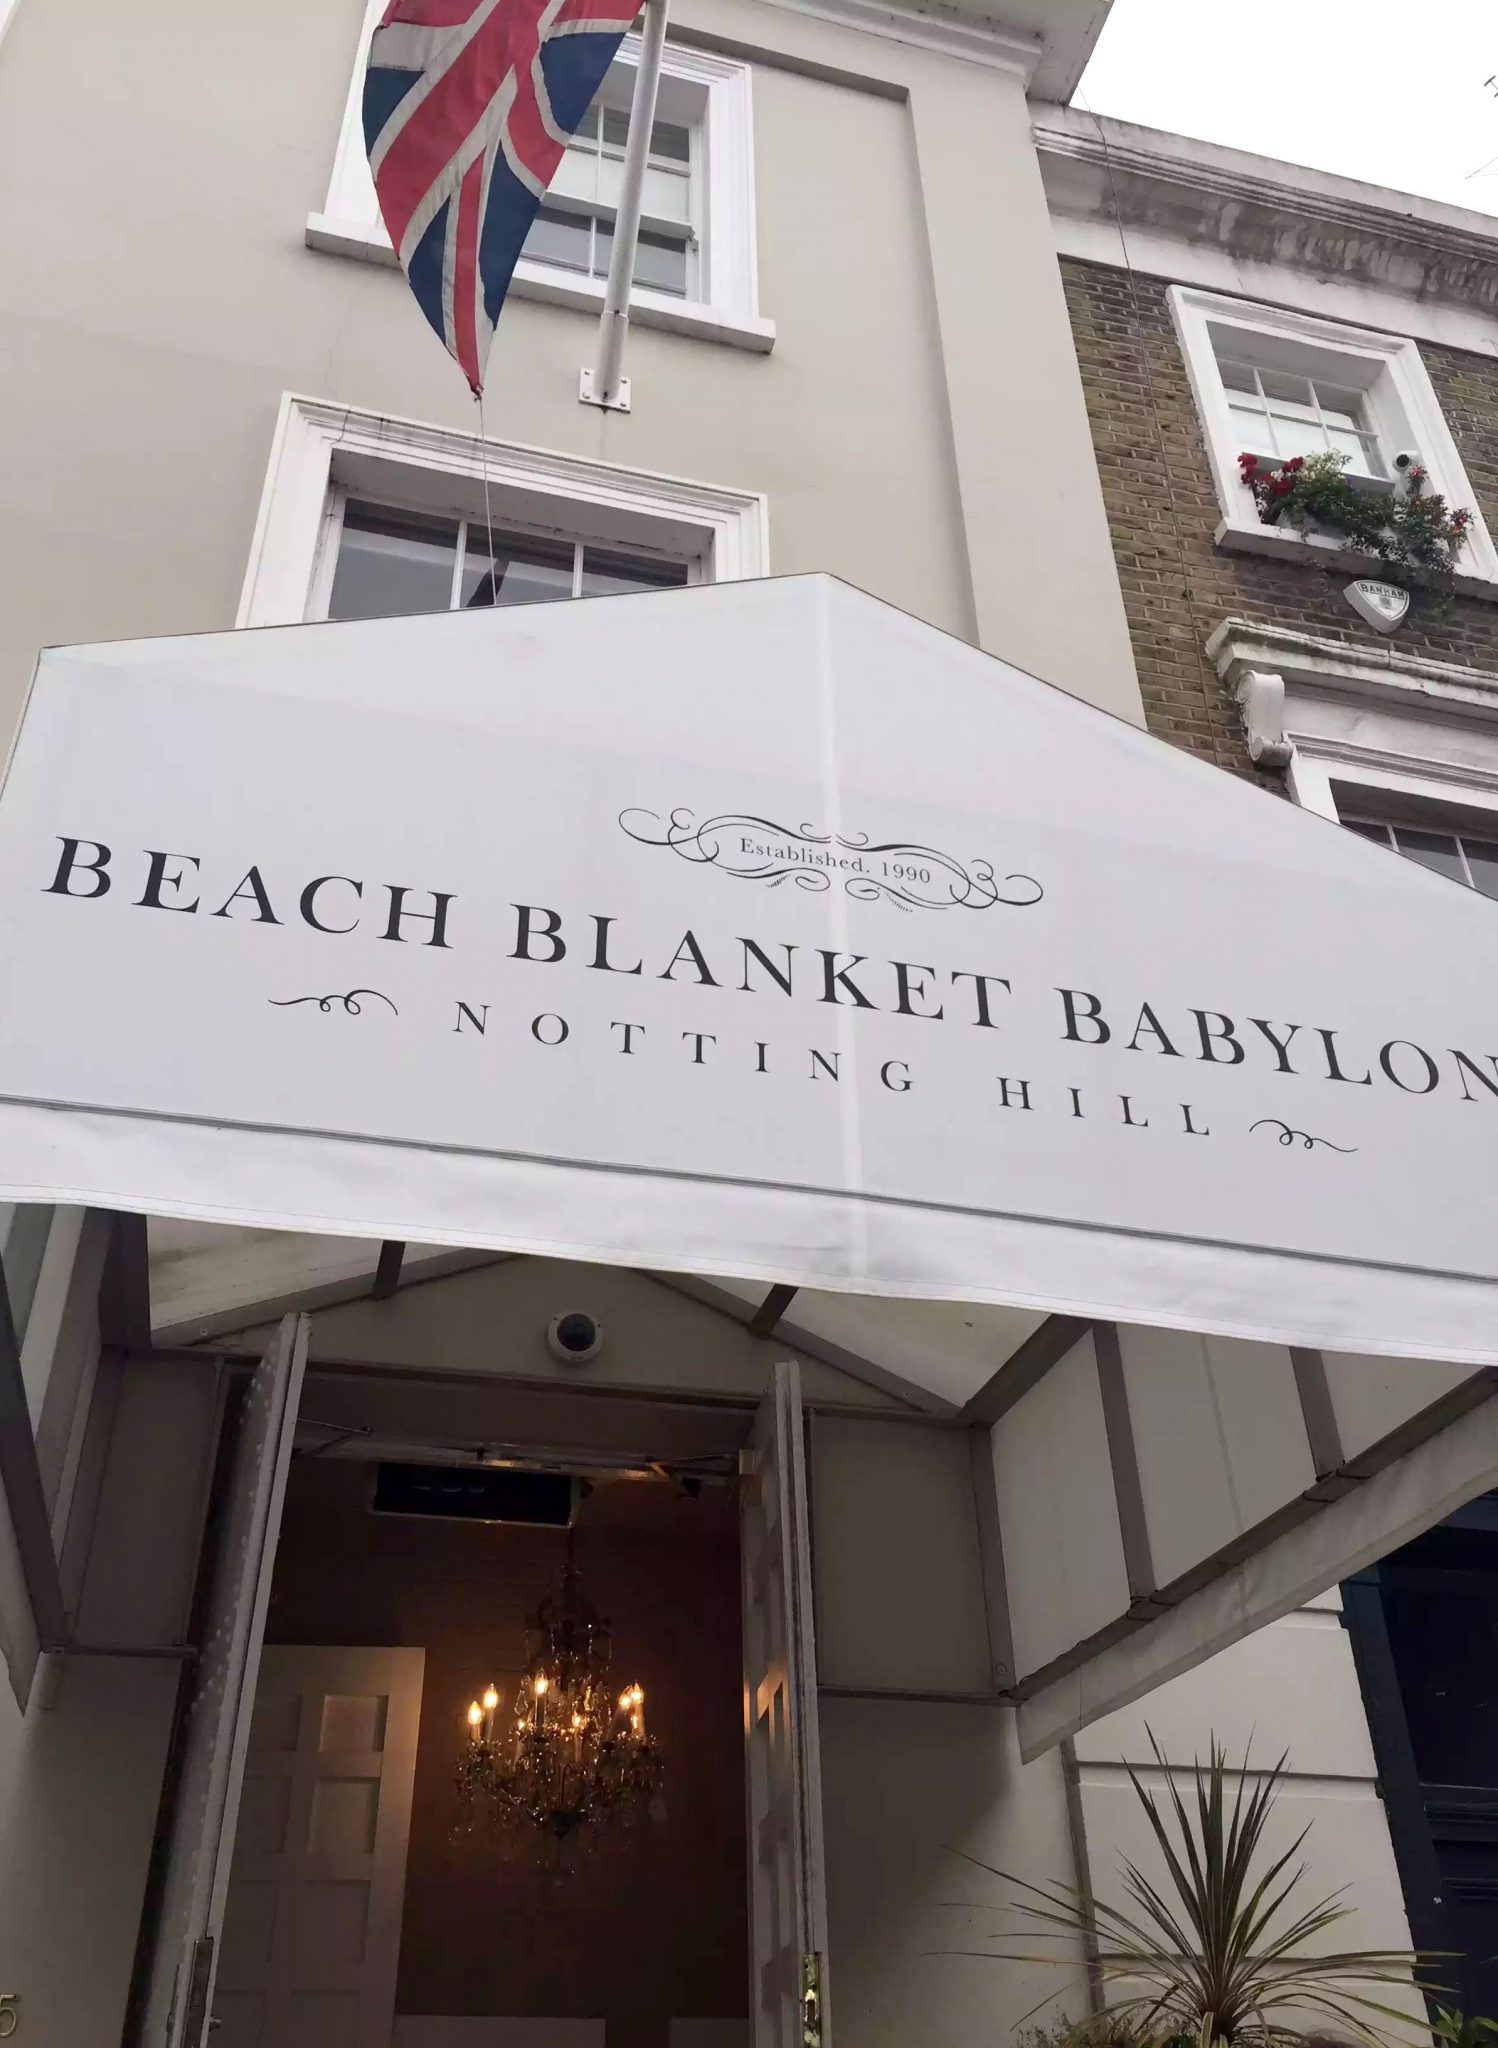 Beach Blanket Babylon Restaurant Notting Hill Birthday Dinner